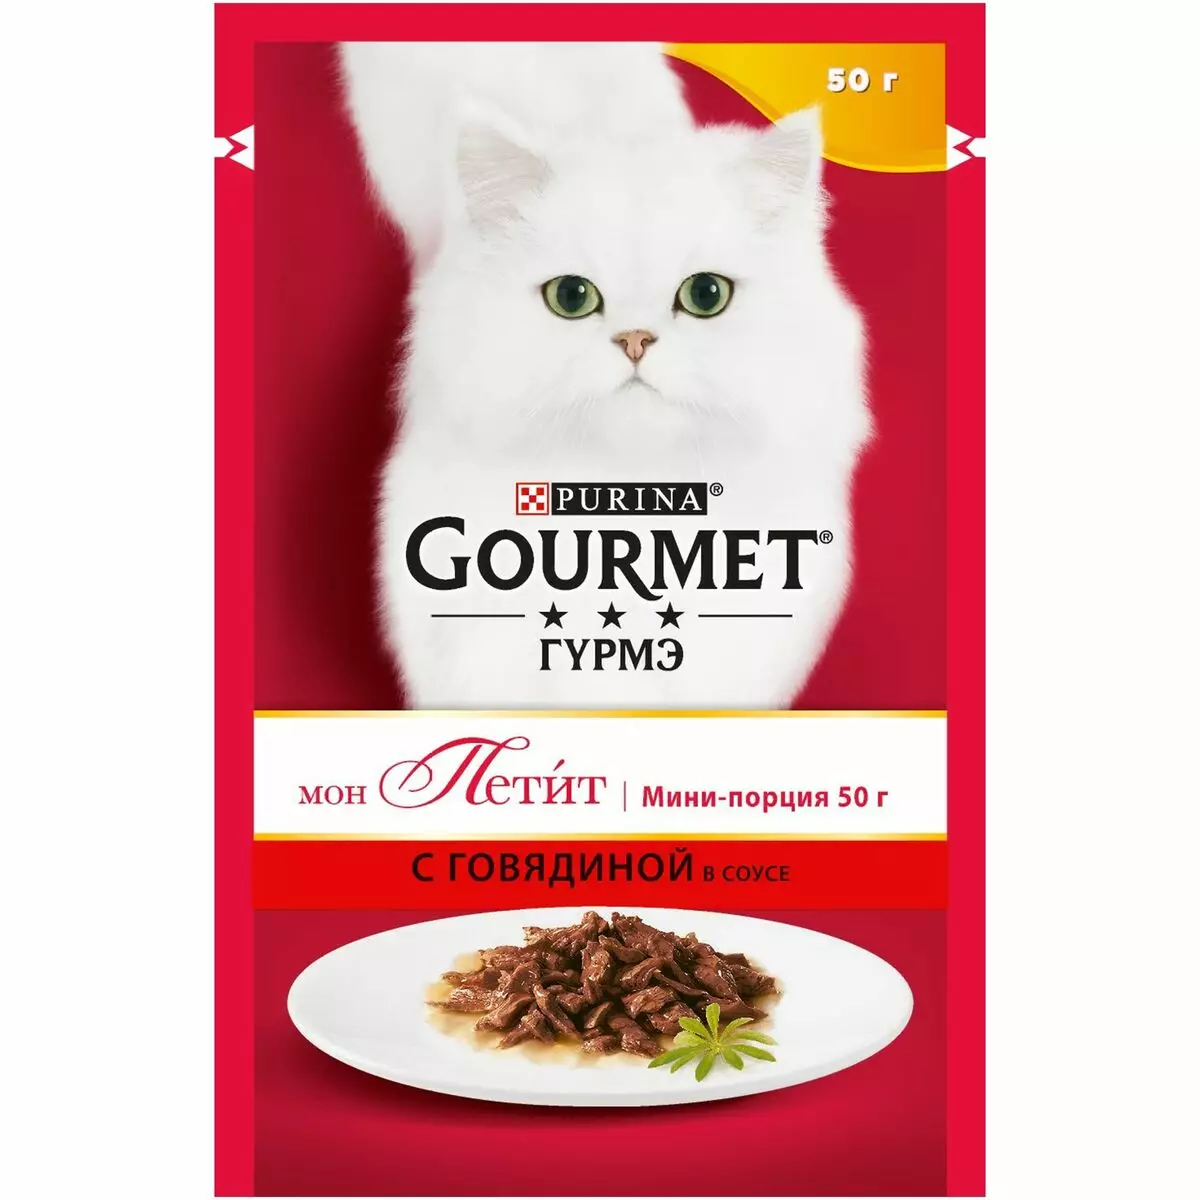 Gourmet: pakan kucing dan kucing purina, pate basah dan makanan kaleng kucing lainnya, komposisi mereka, ulasan 22711_39